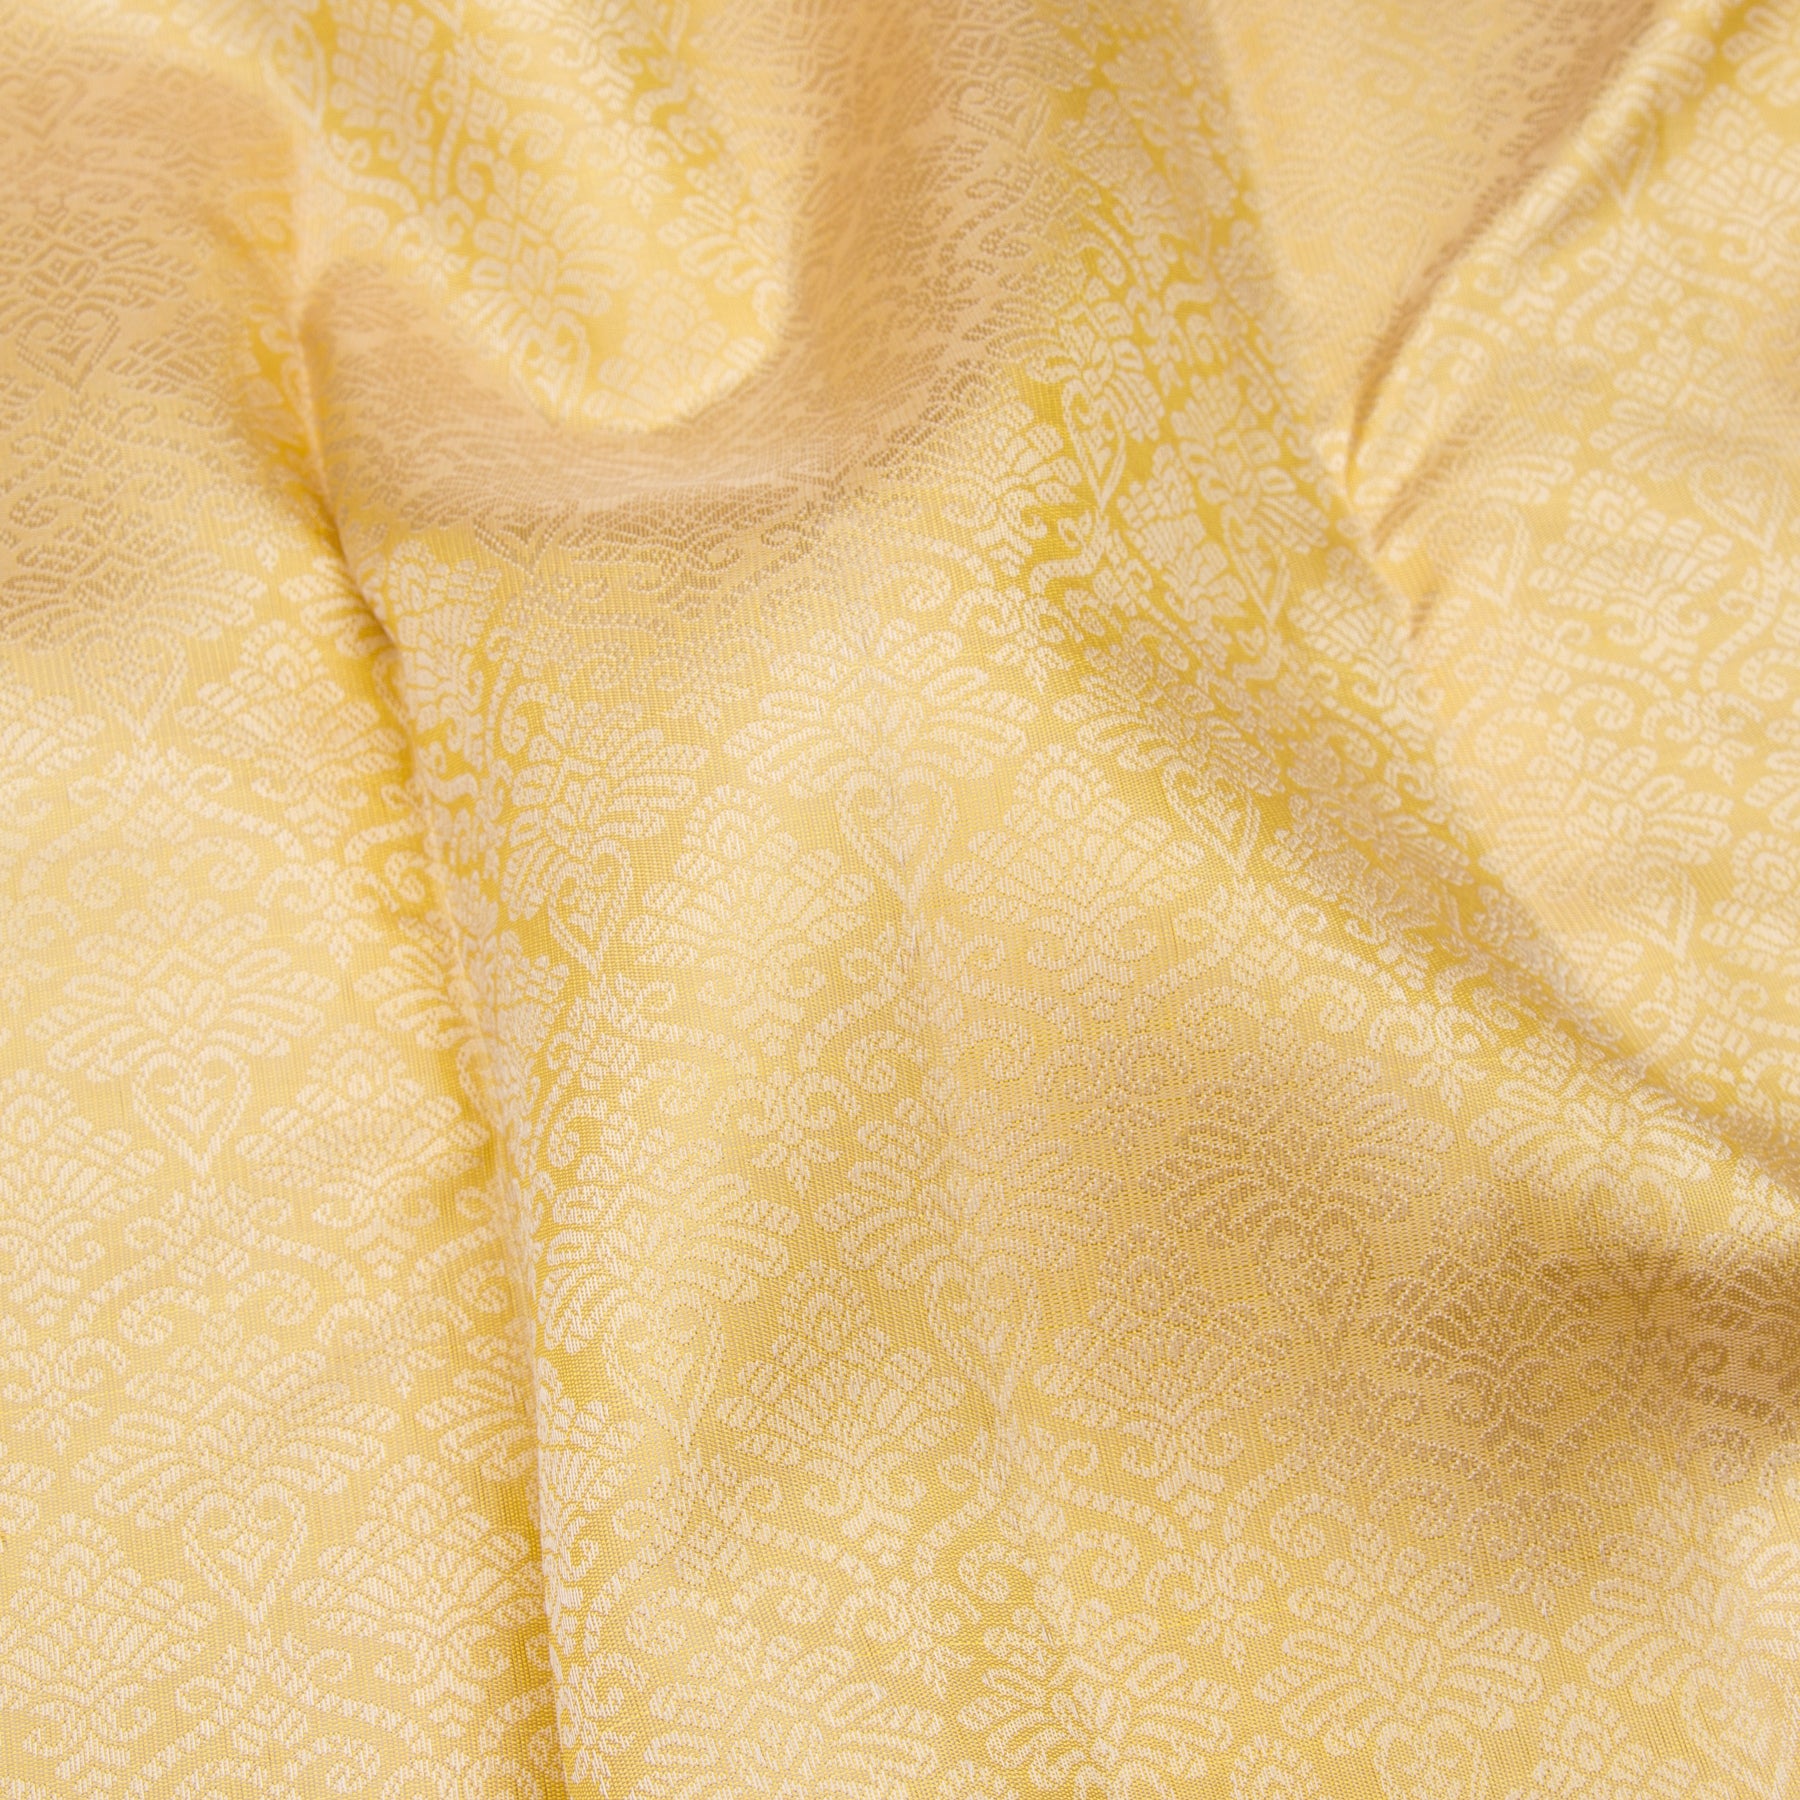 Kanakavalli Kanjivaram Silk Sari 23-599-HS001-13885 - Fabric View